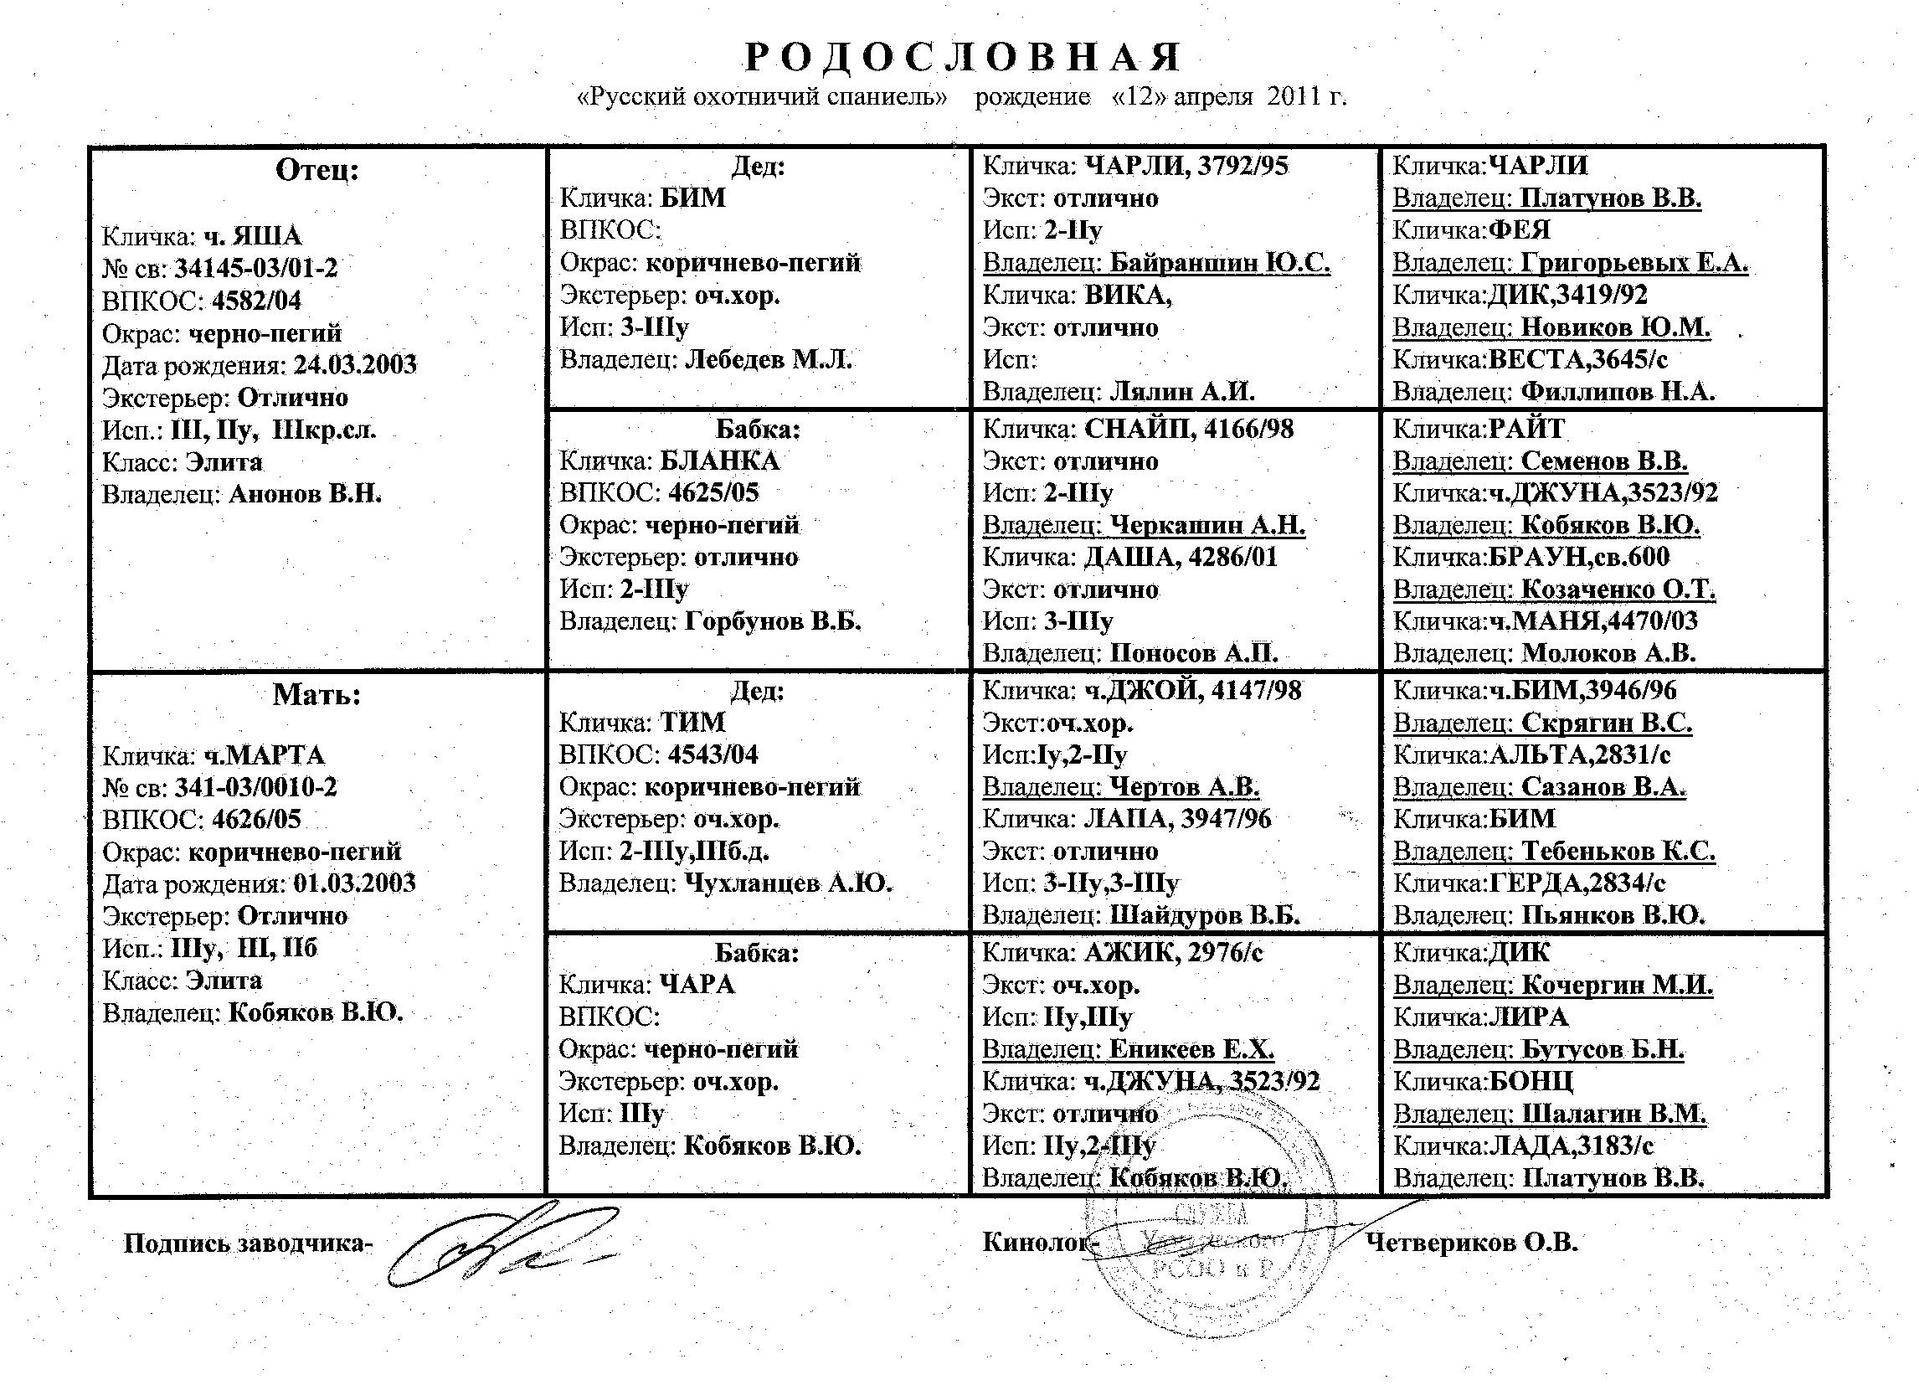 Как назвать русскую гончюю: список имен для выжловок и выжлецов, мальчиков и девочек.